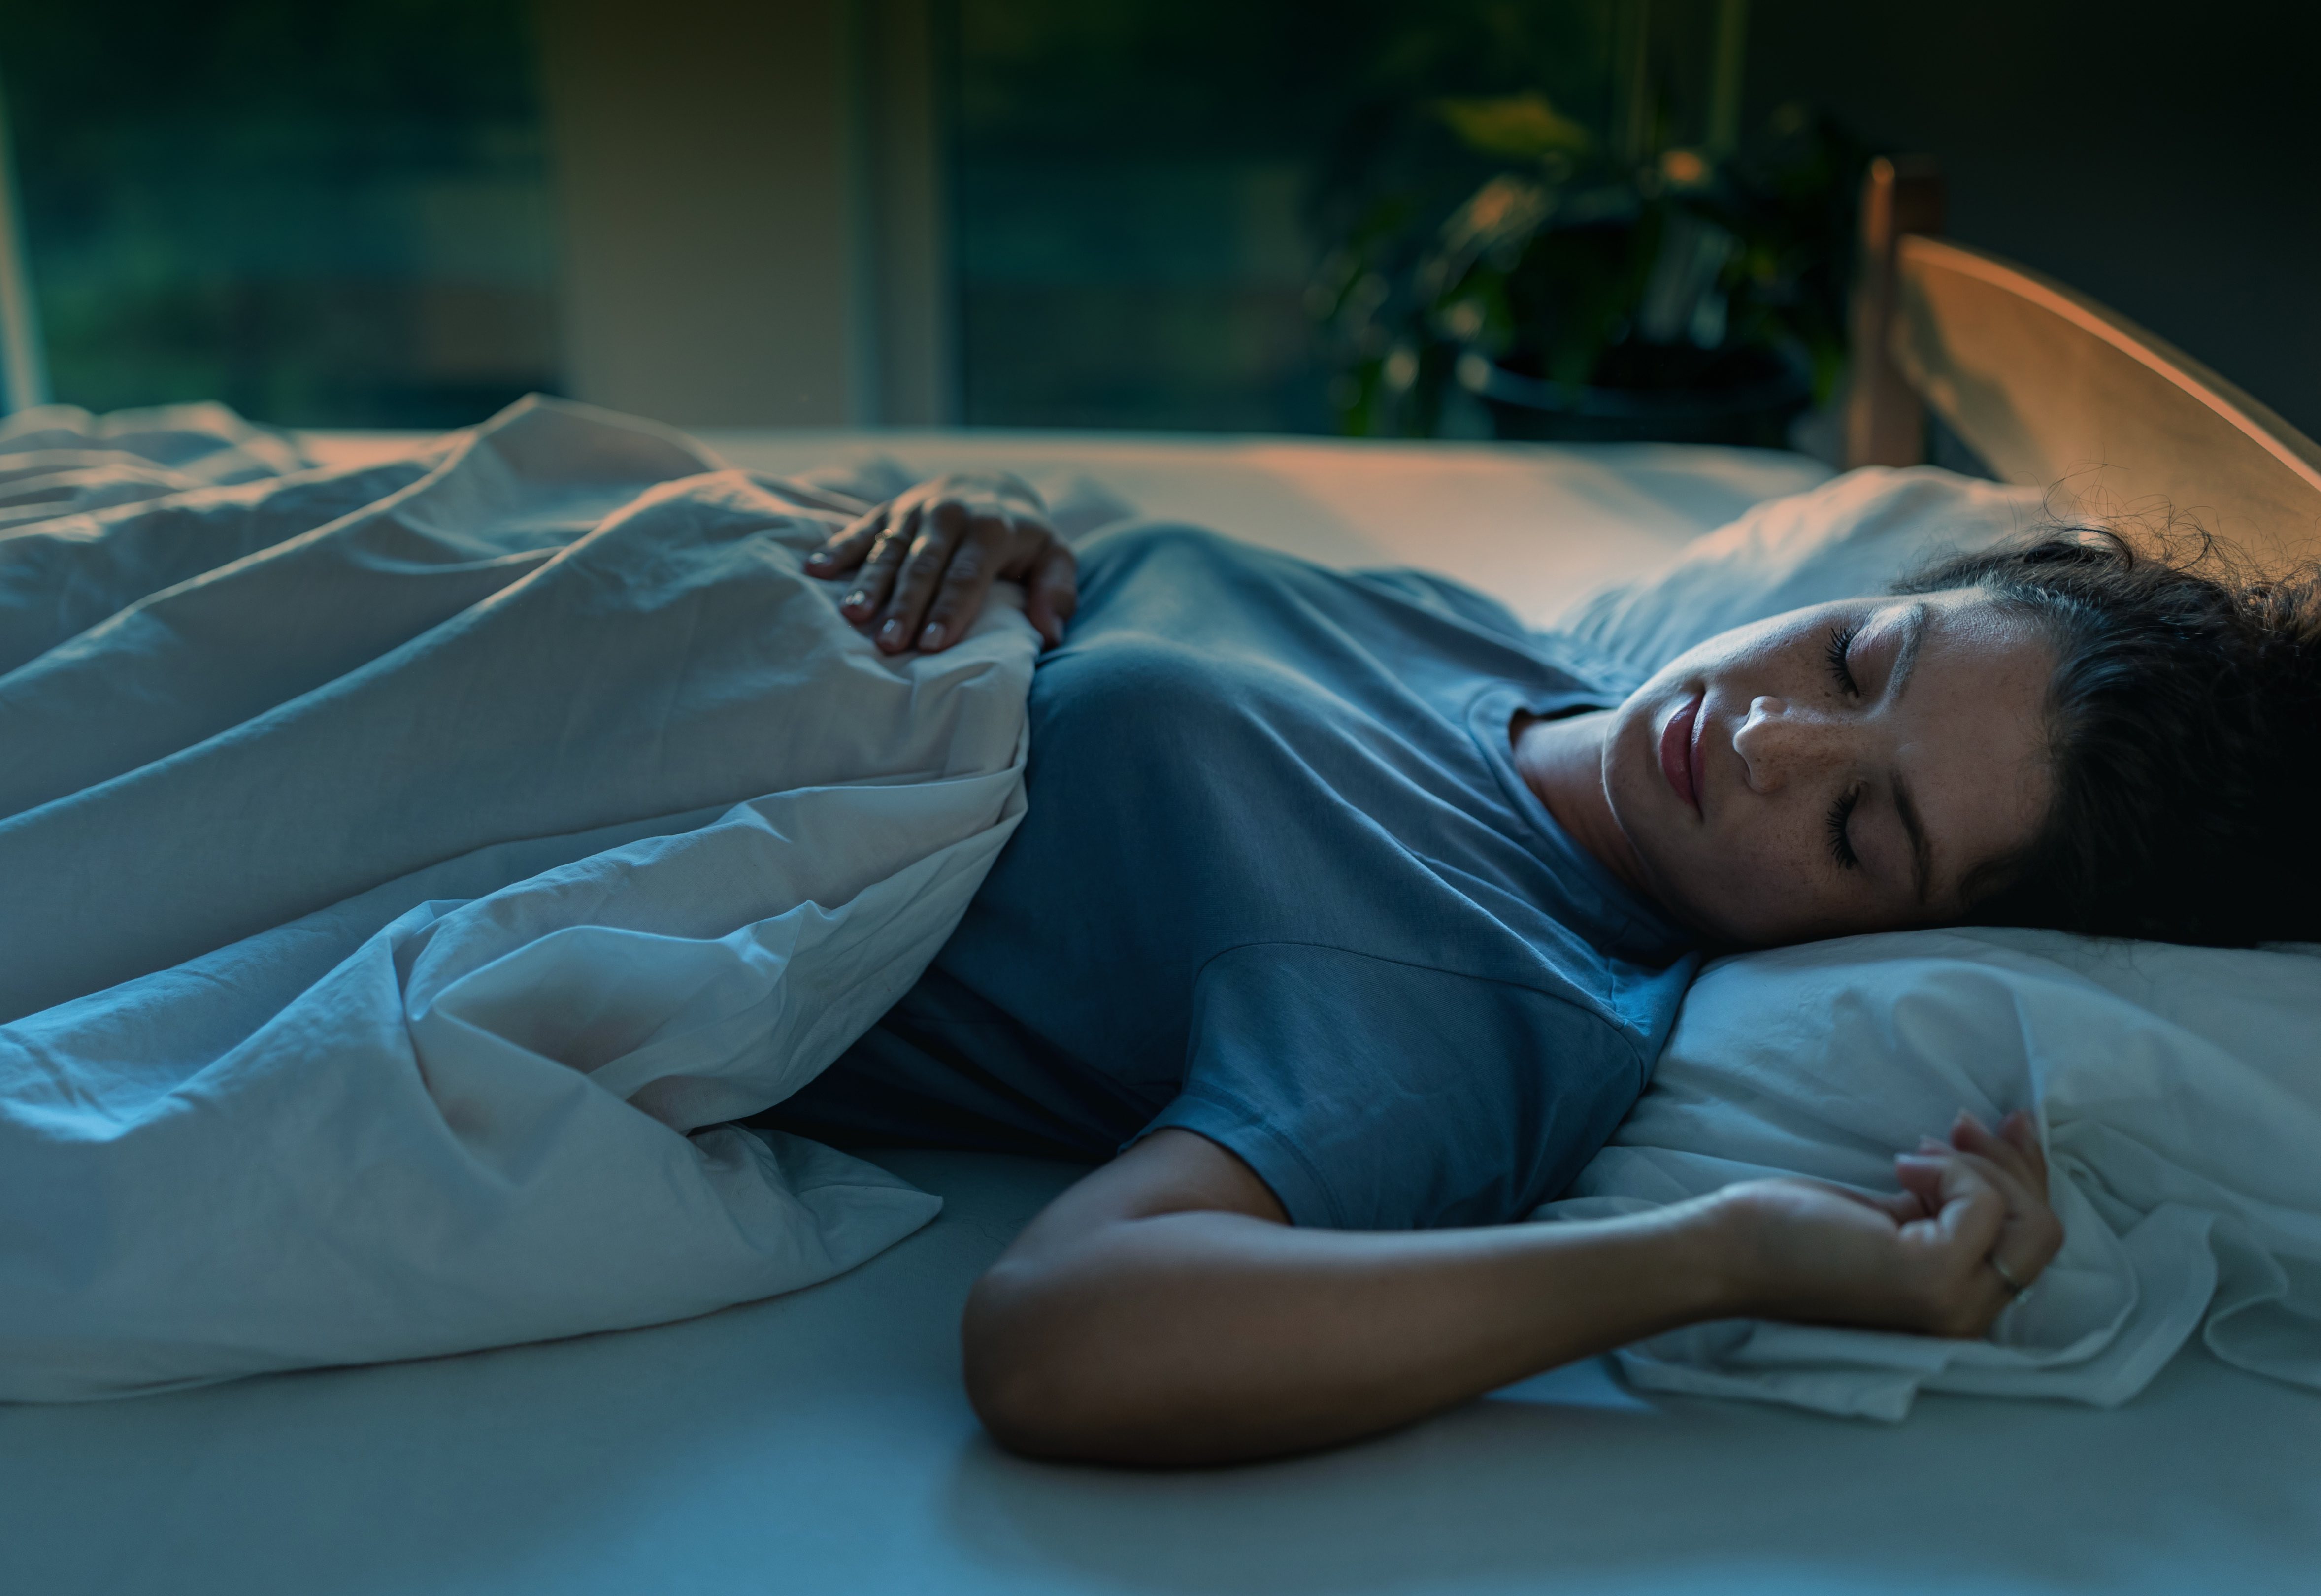 Eine junge Frau schlÃ¤ft in einem Bett. Um bei Hitze besser schlafen zu kÃ¶nnen, solltest du diese BettwÃ¤sche verwenden.